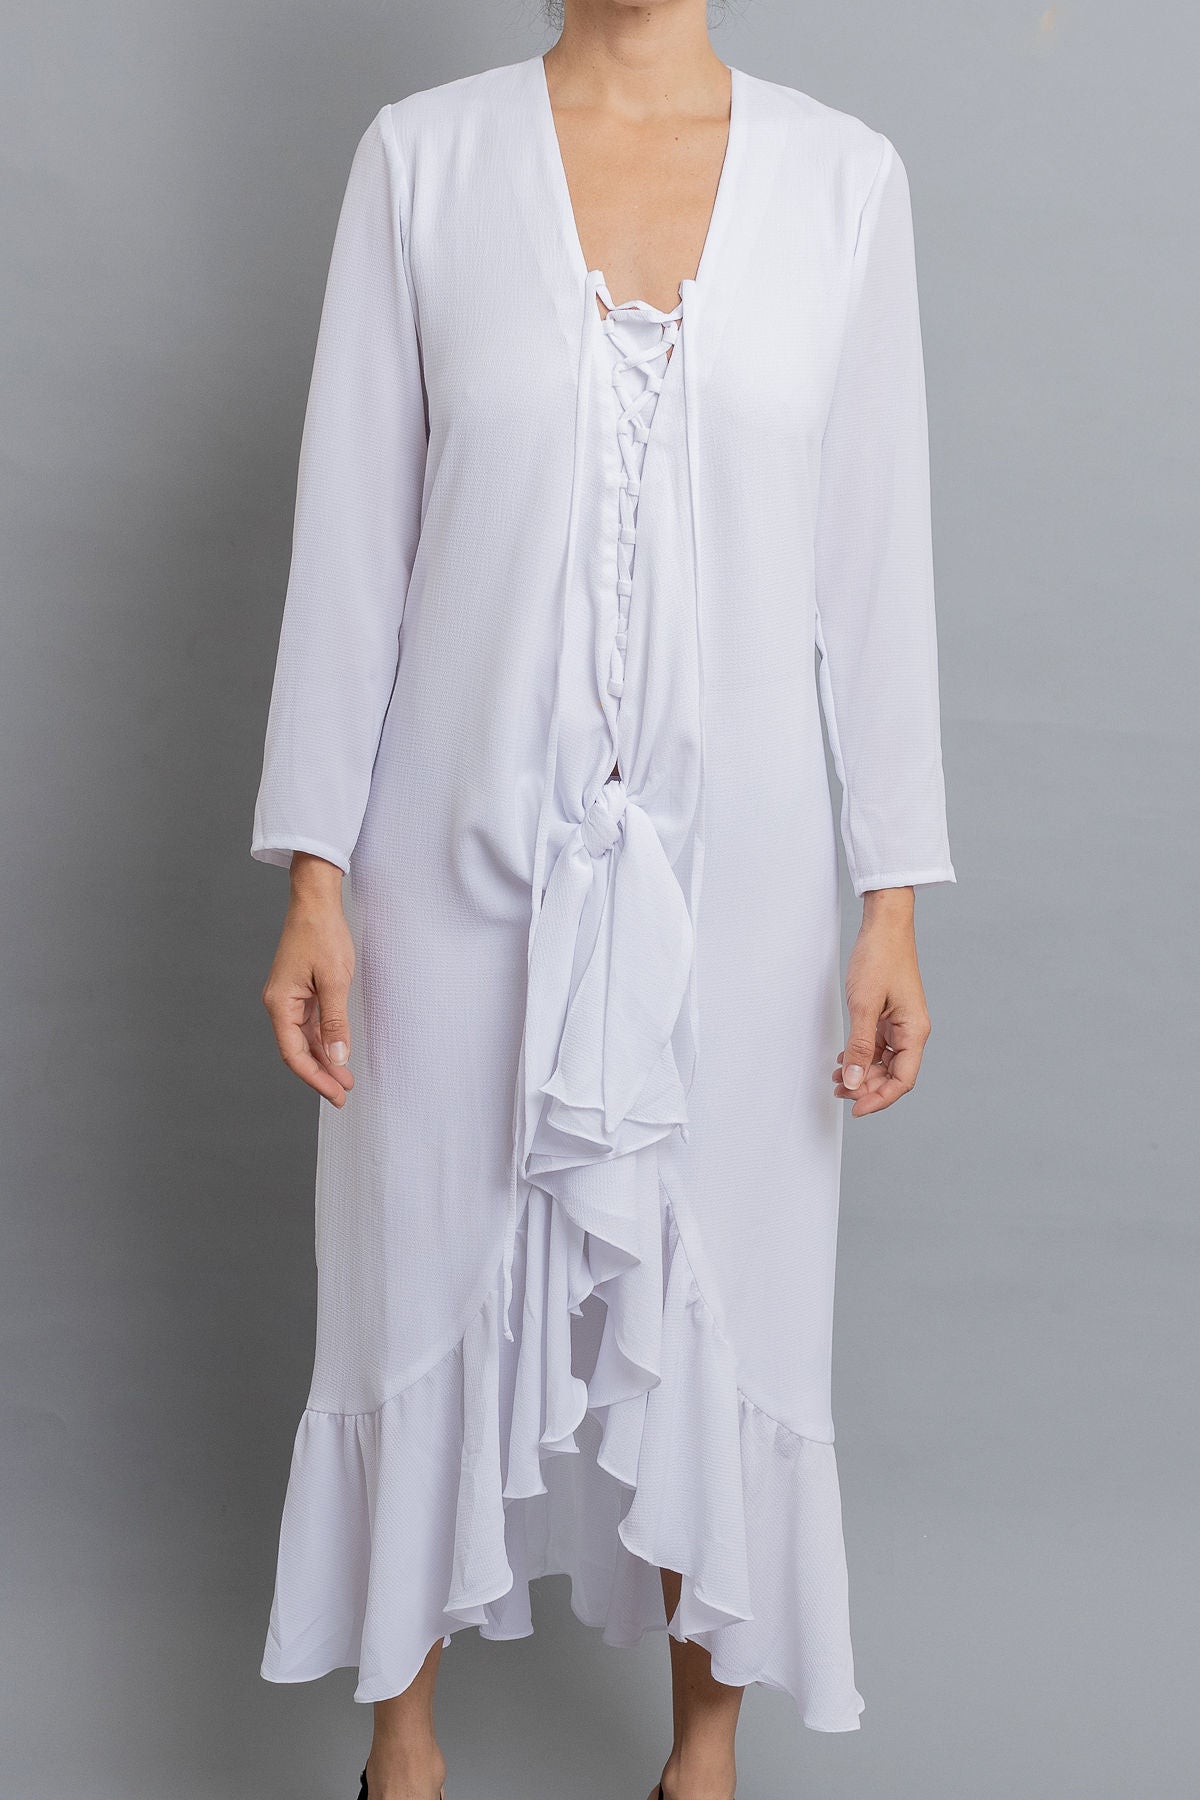 White Knot midi dress - Shantall Lacayo